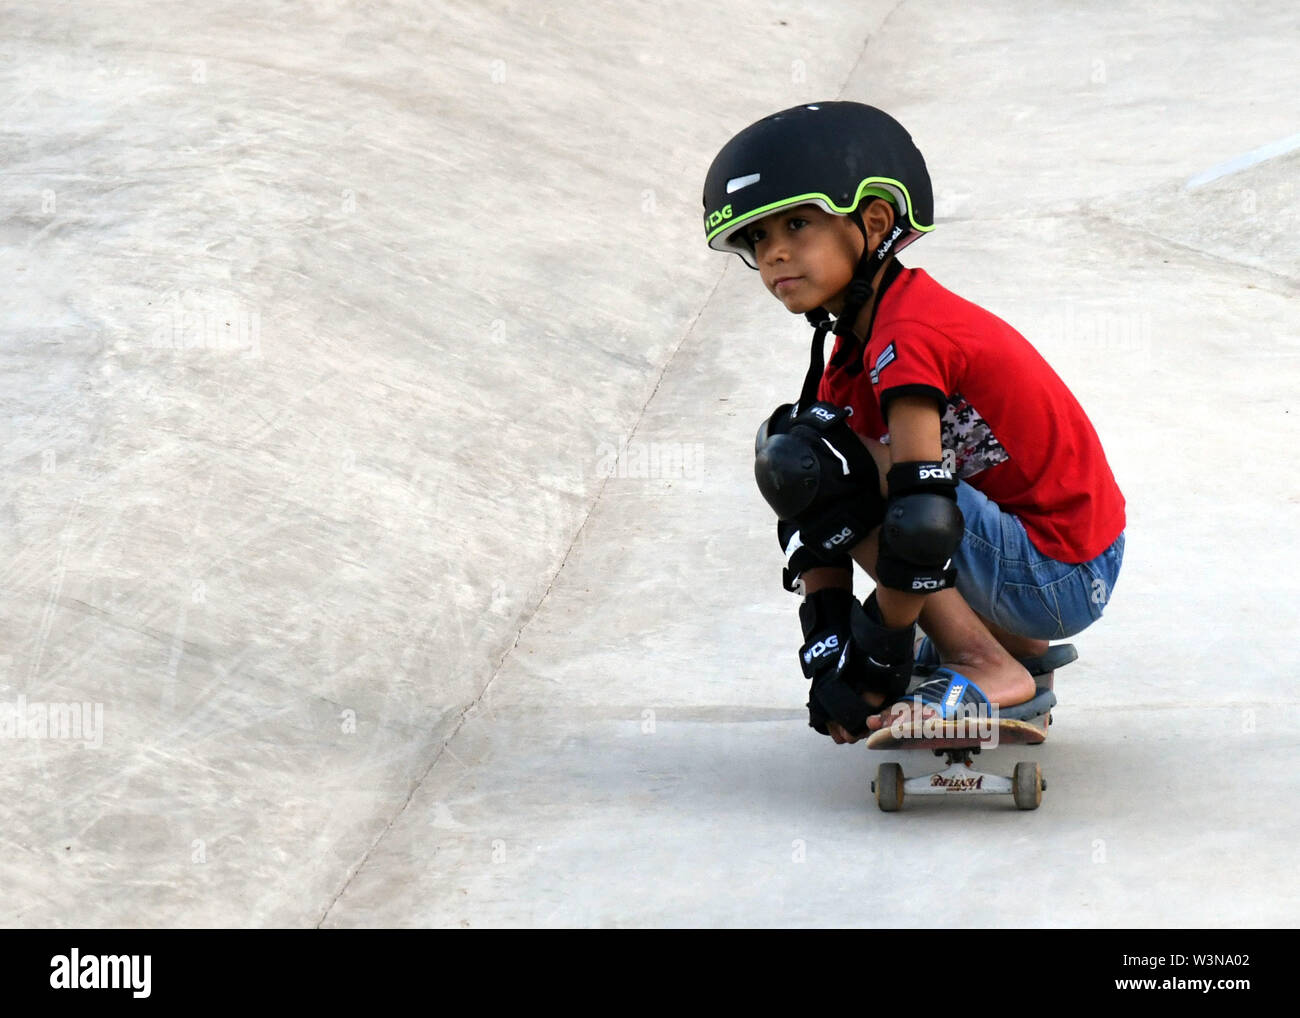 190717) -- Damasco, luglio 17, 2019 (Xinhua) -- Un bambino di skateboard  durante l'apertura del primo skatepark in Damasco, Siria, luglio 15, 2019.  La skatepark è stato co-costruito dai villaggi dei bambini